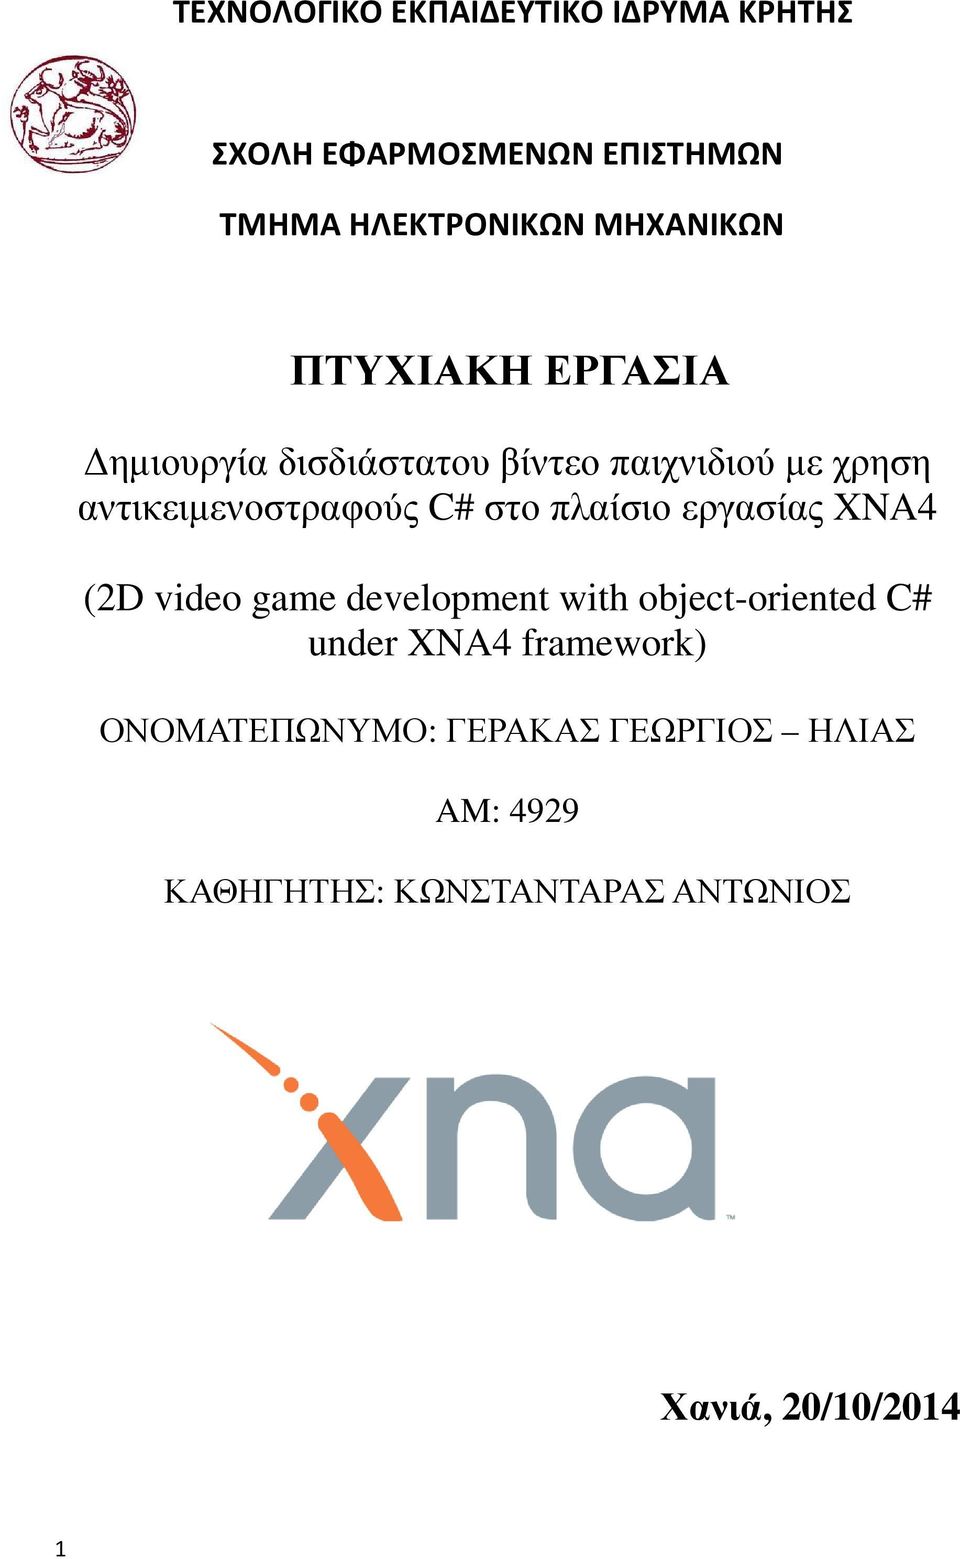 πλαίσιο εργασίας XNA4 (2D video game development with object-oriented C# under XNA4 framework)